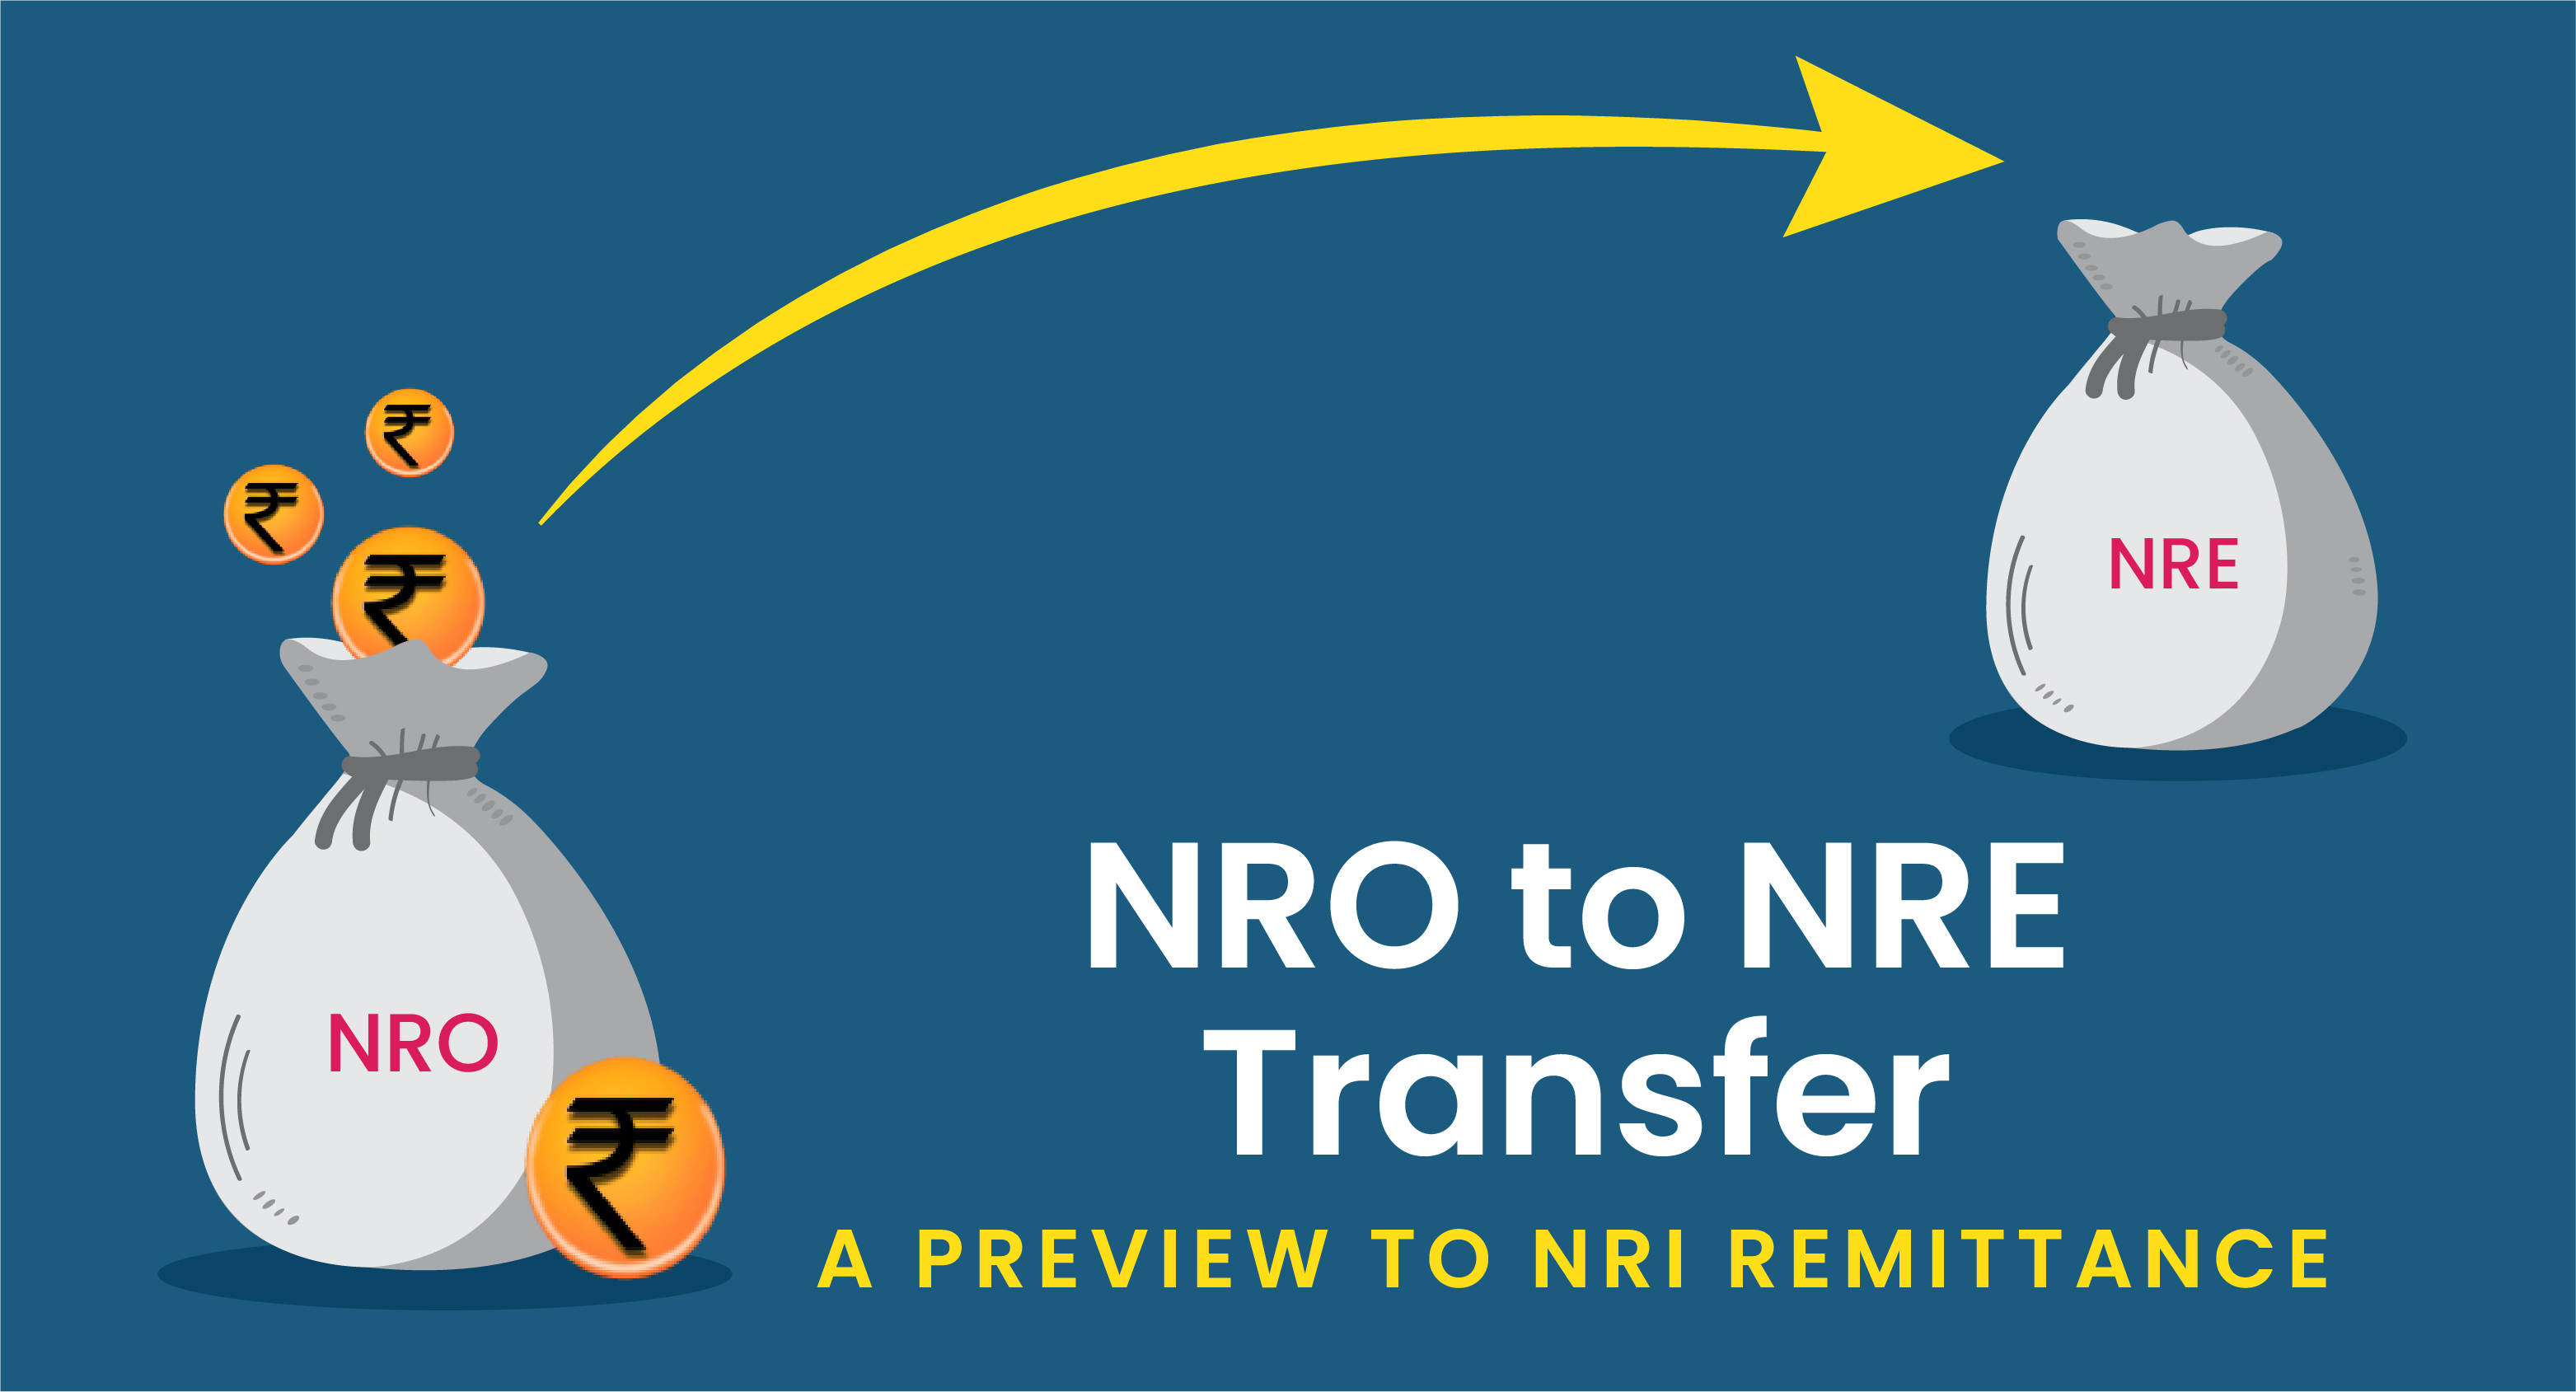 NRO to NRE Transfer: A Preview